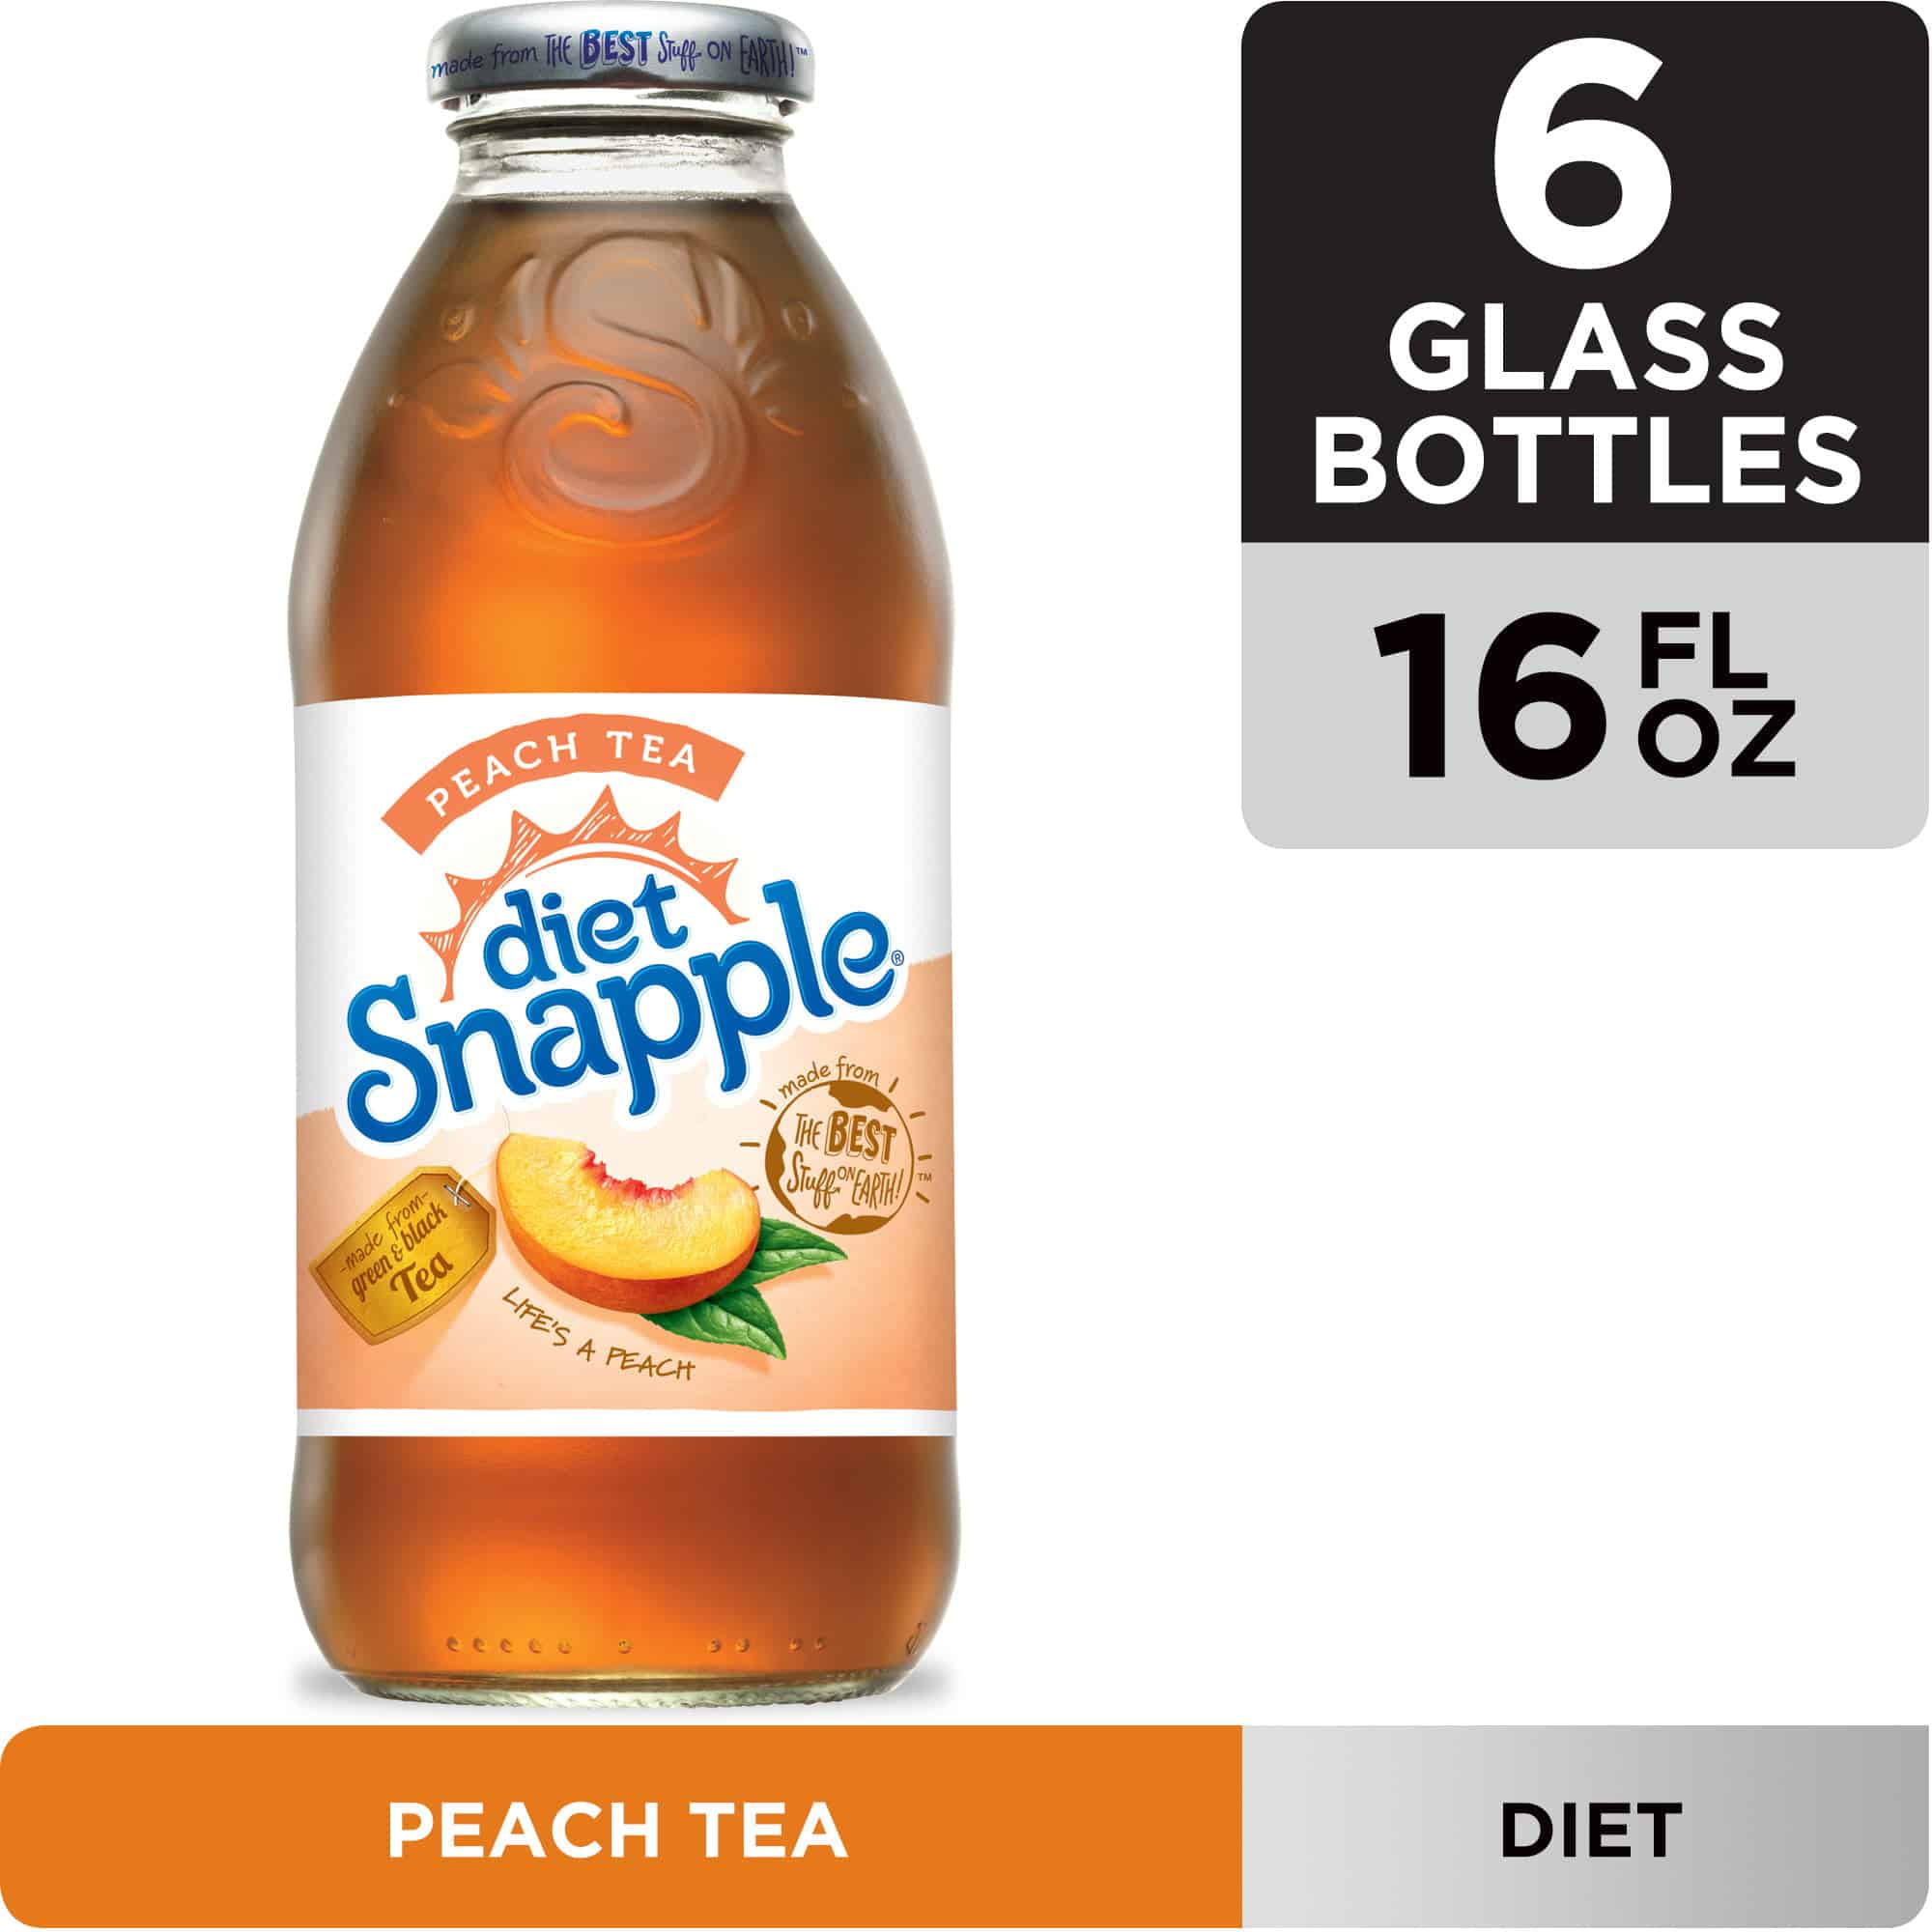 Diet Snapple Peach Tea, 16 fl oz glass bottles, 6 pack